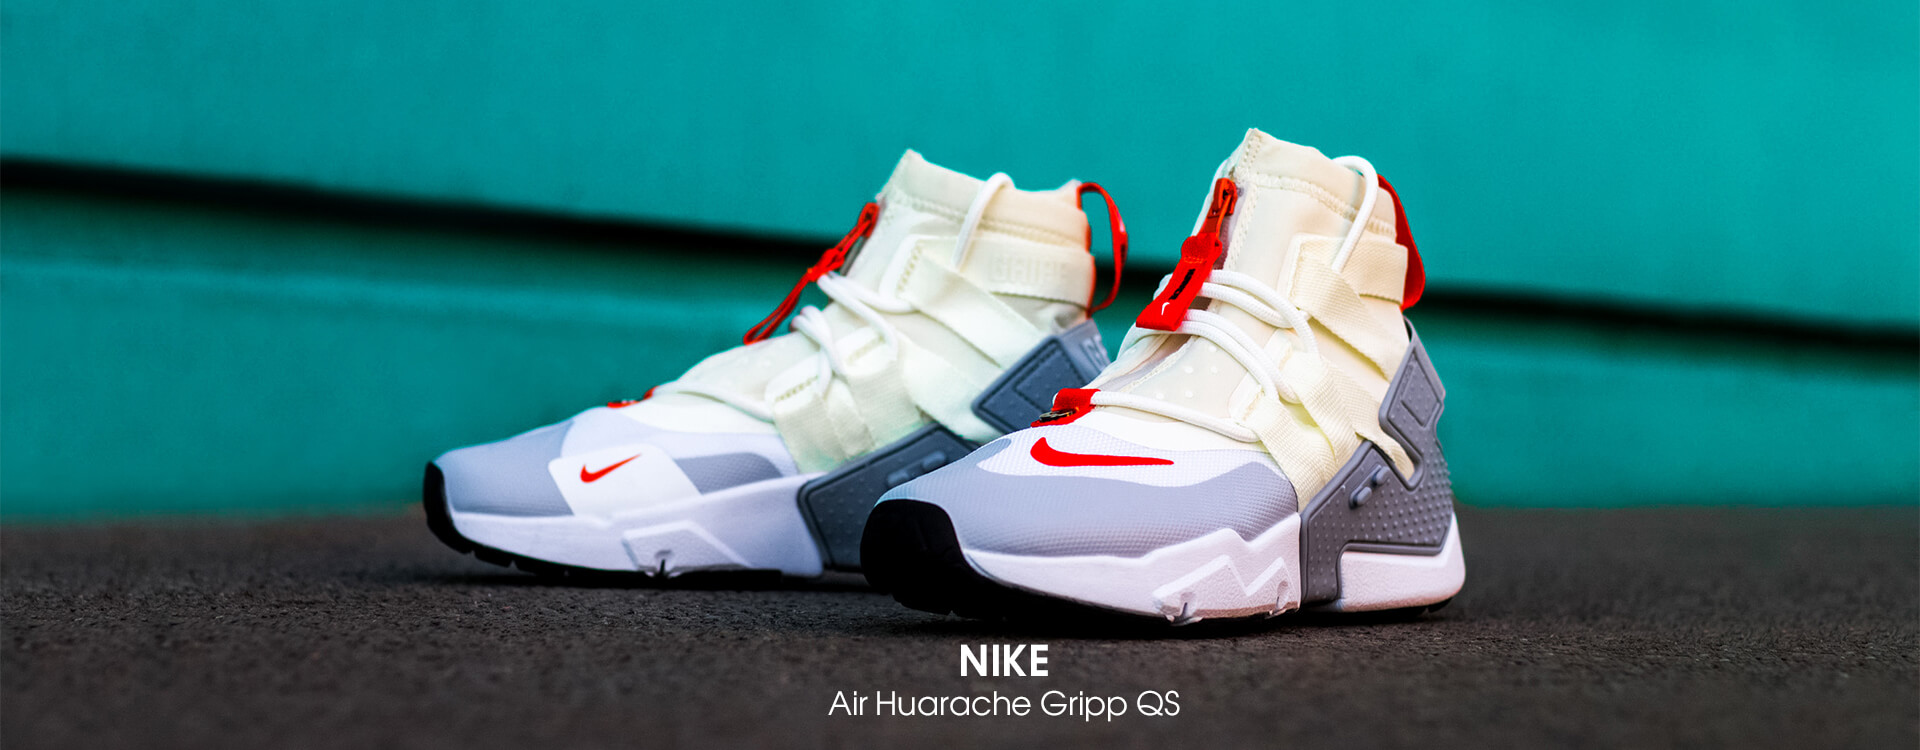 Кроссовки Nike Air Huarache Gripp QS